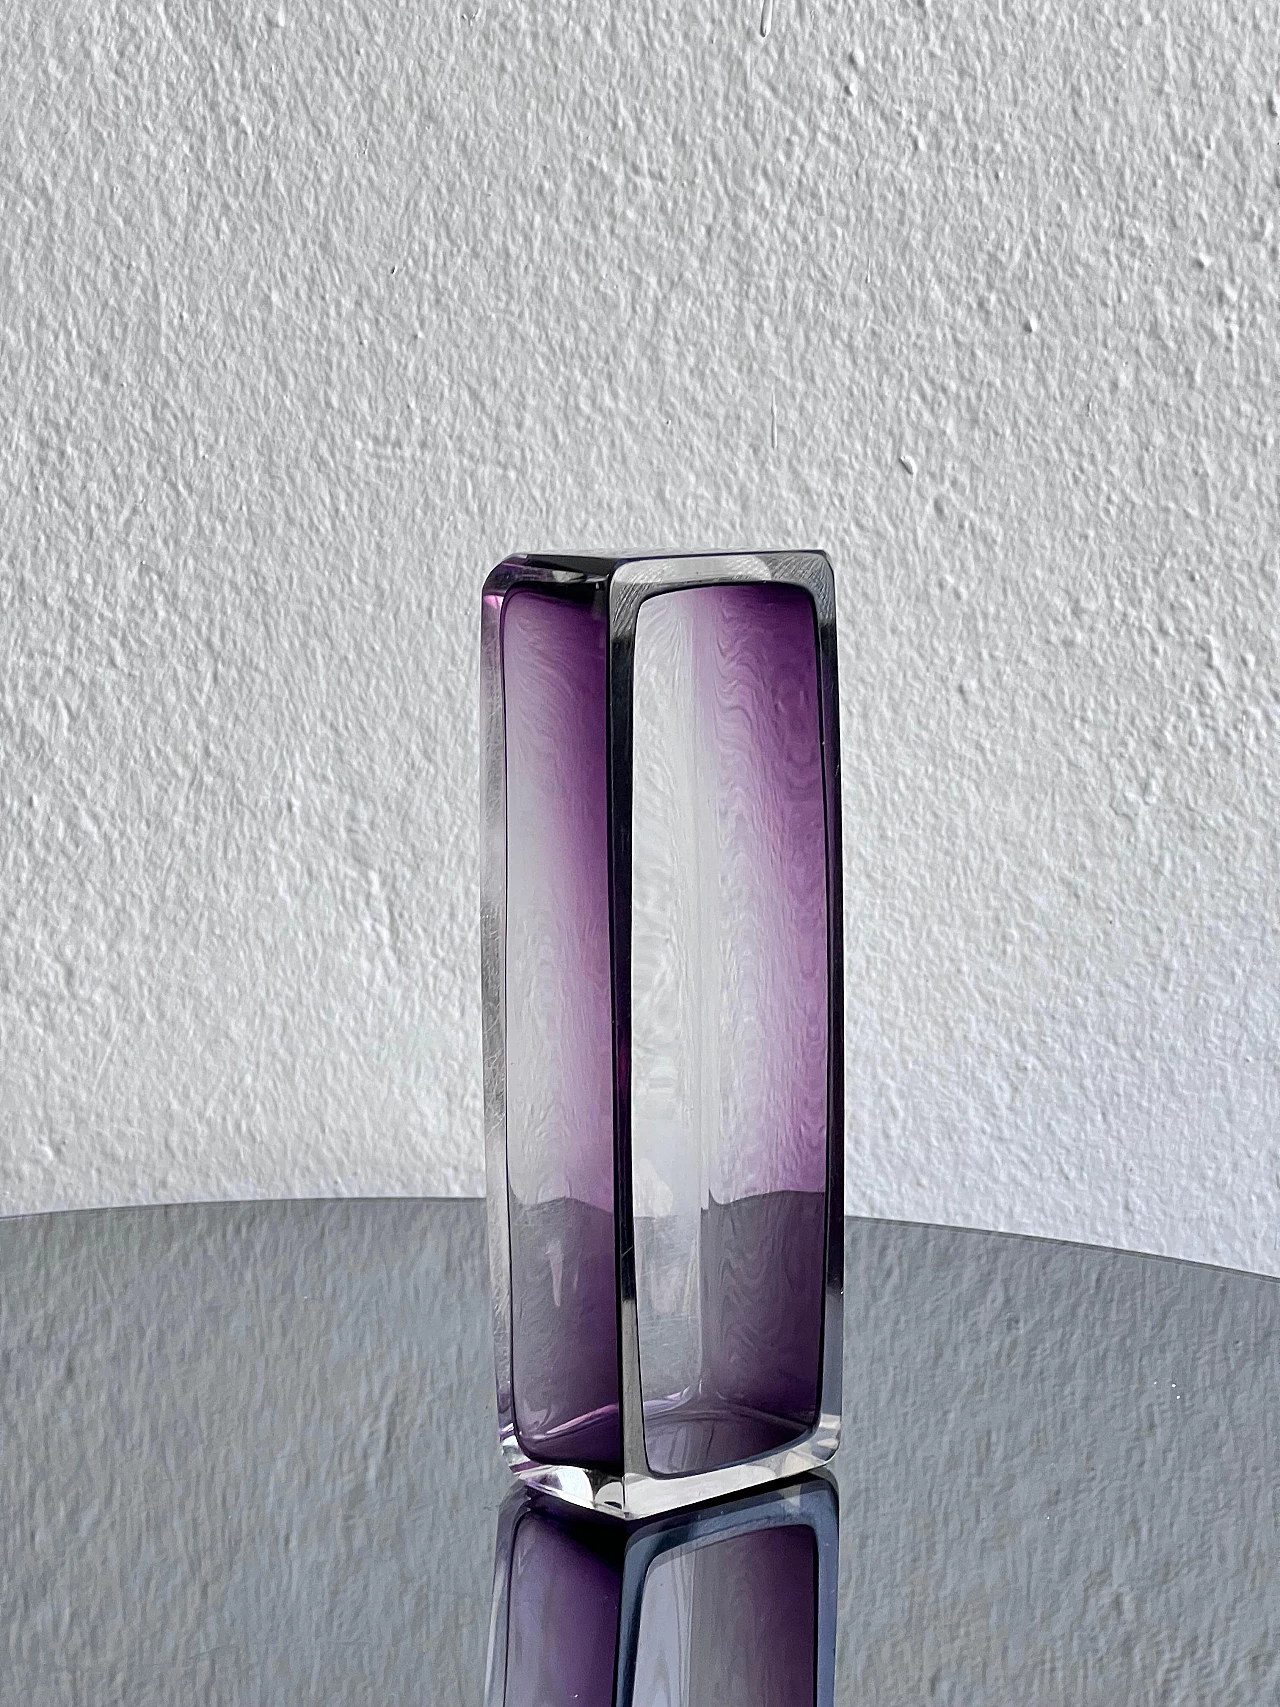 Svuotatasche rettangolare in vetro viola, anni '70 5